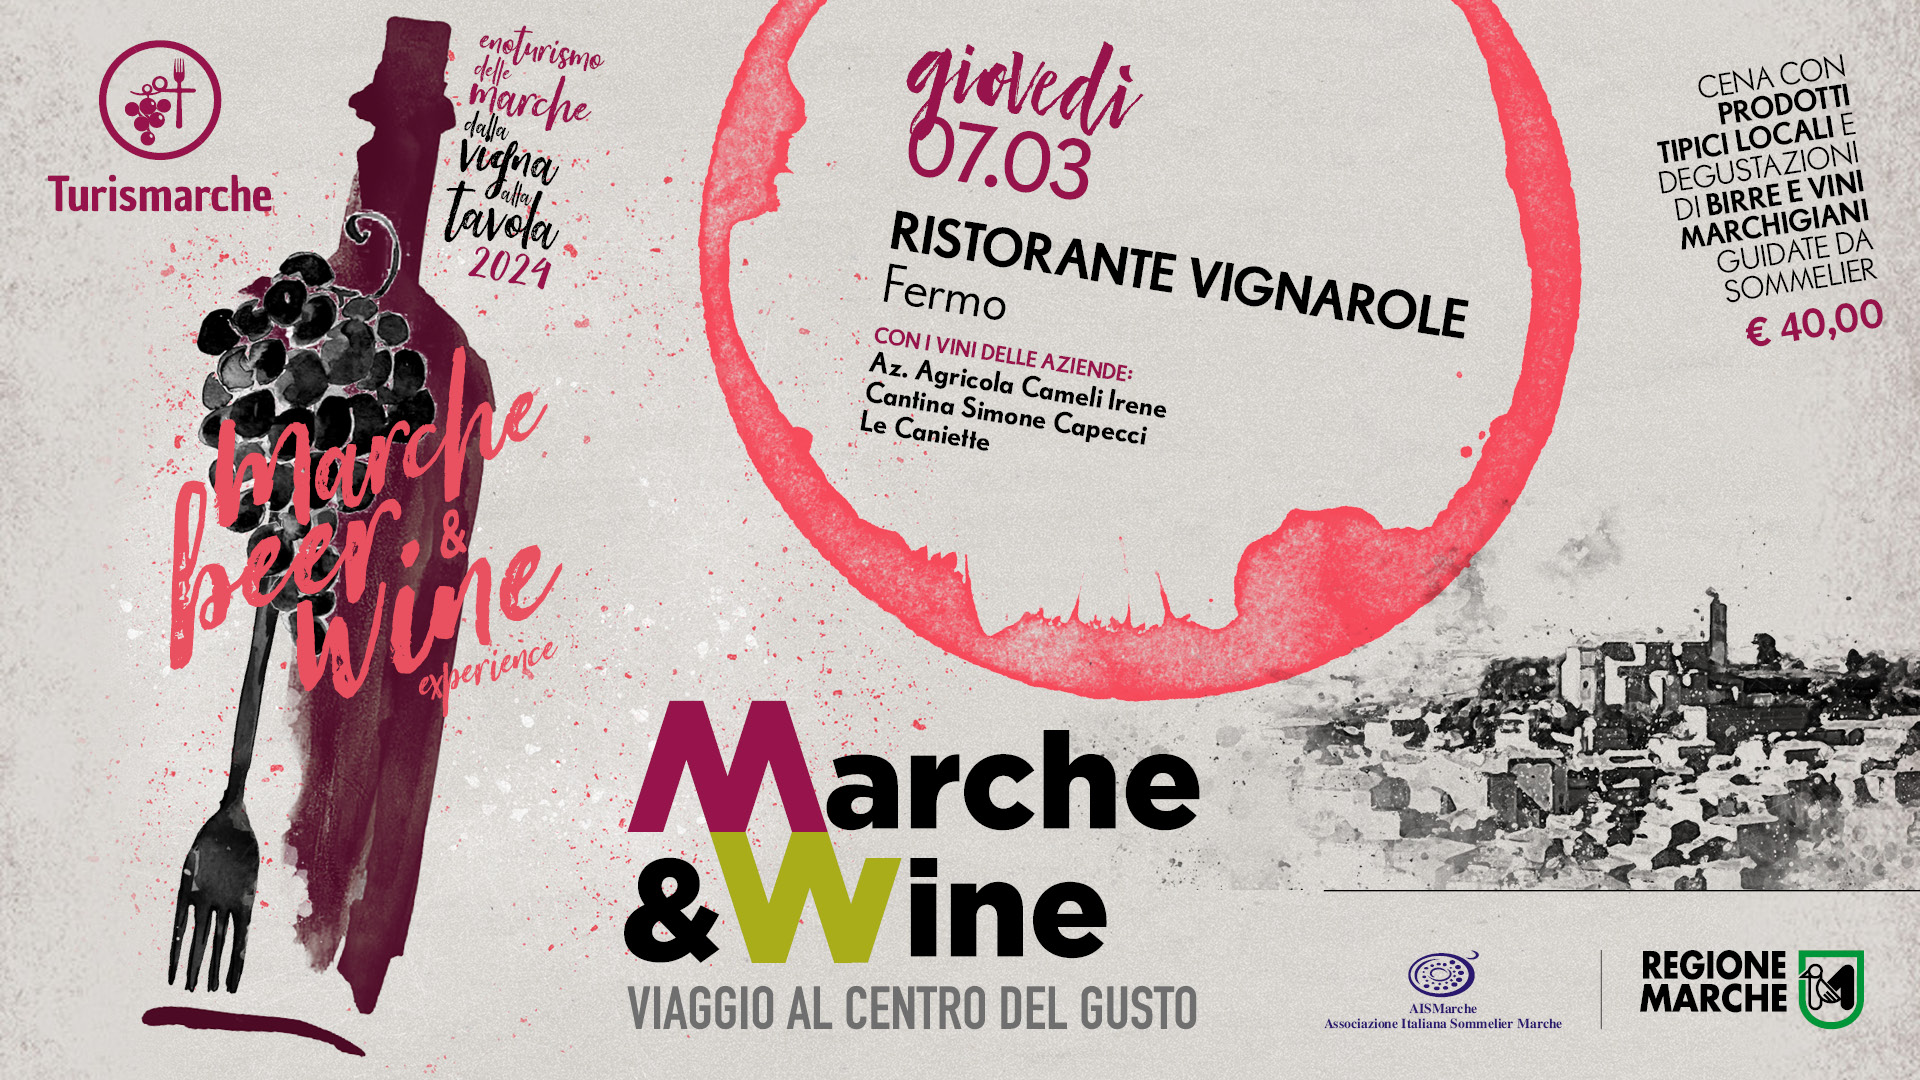 Marche Beer & Wine Experience - Ristorante Vignarole